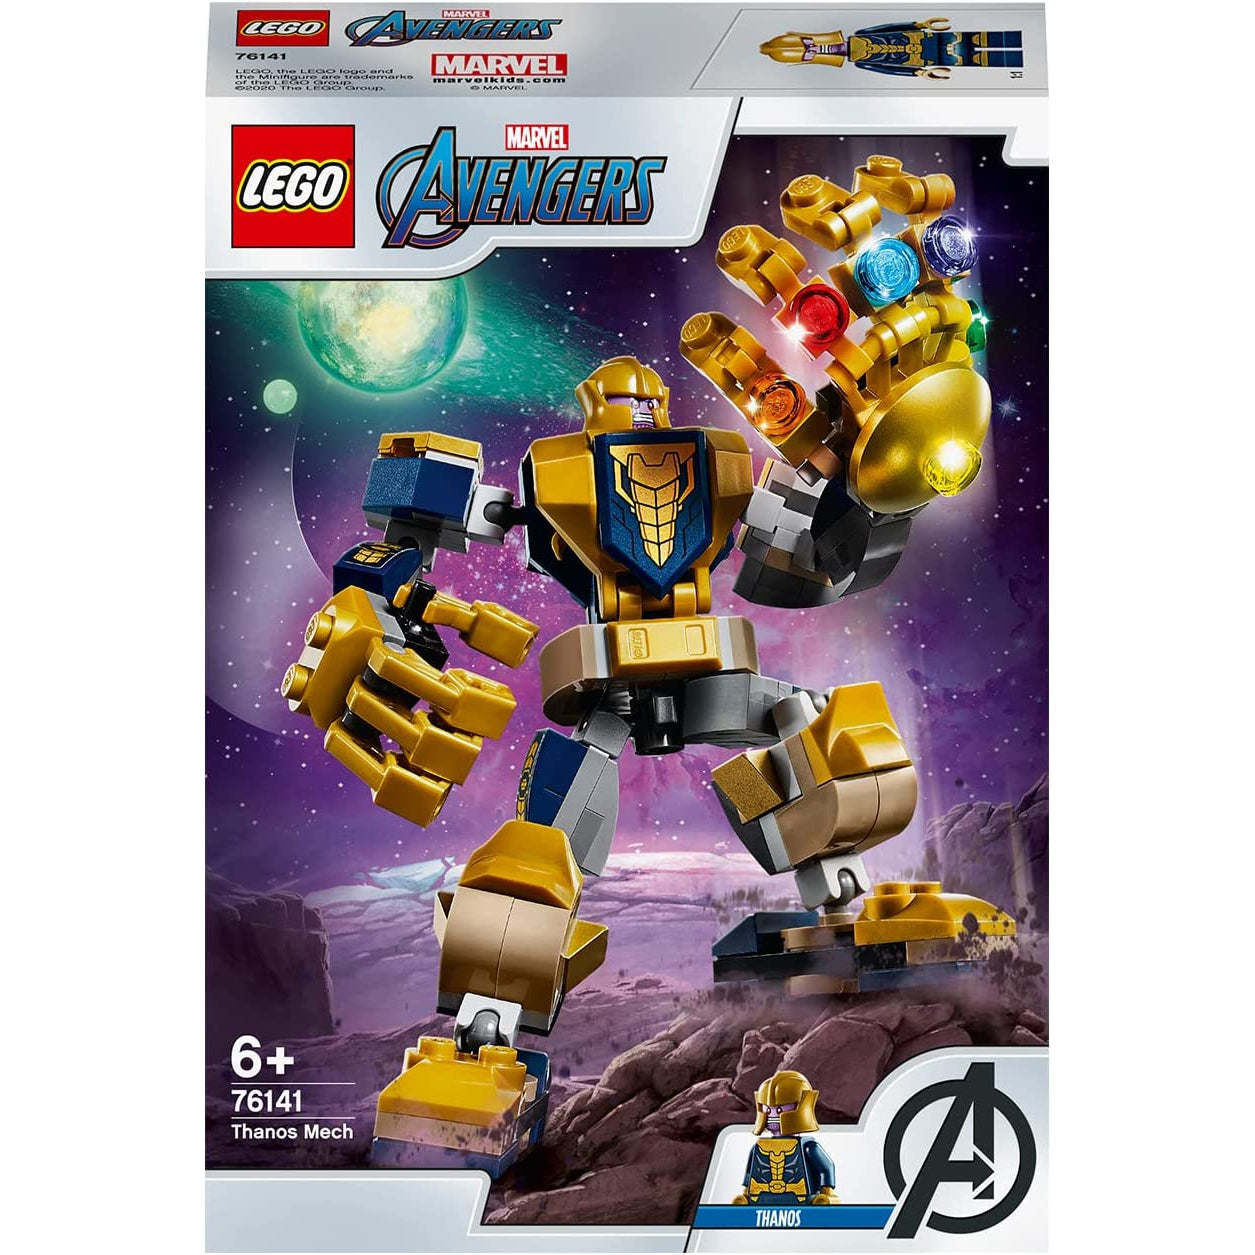 LEGO 76141 Marvel Avengers - Thanos Mech